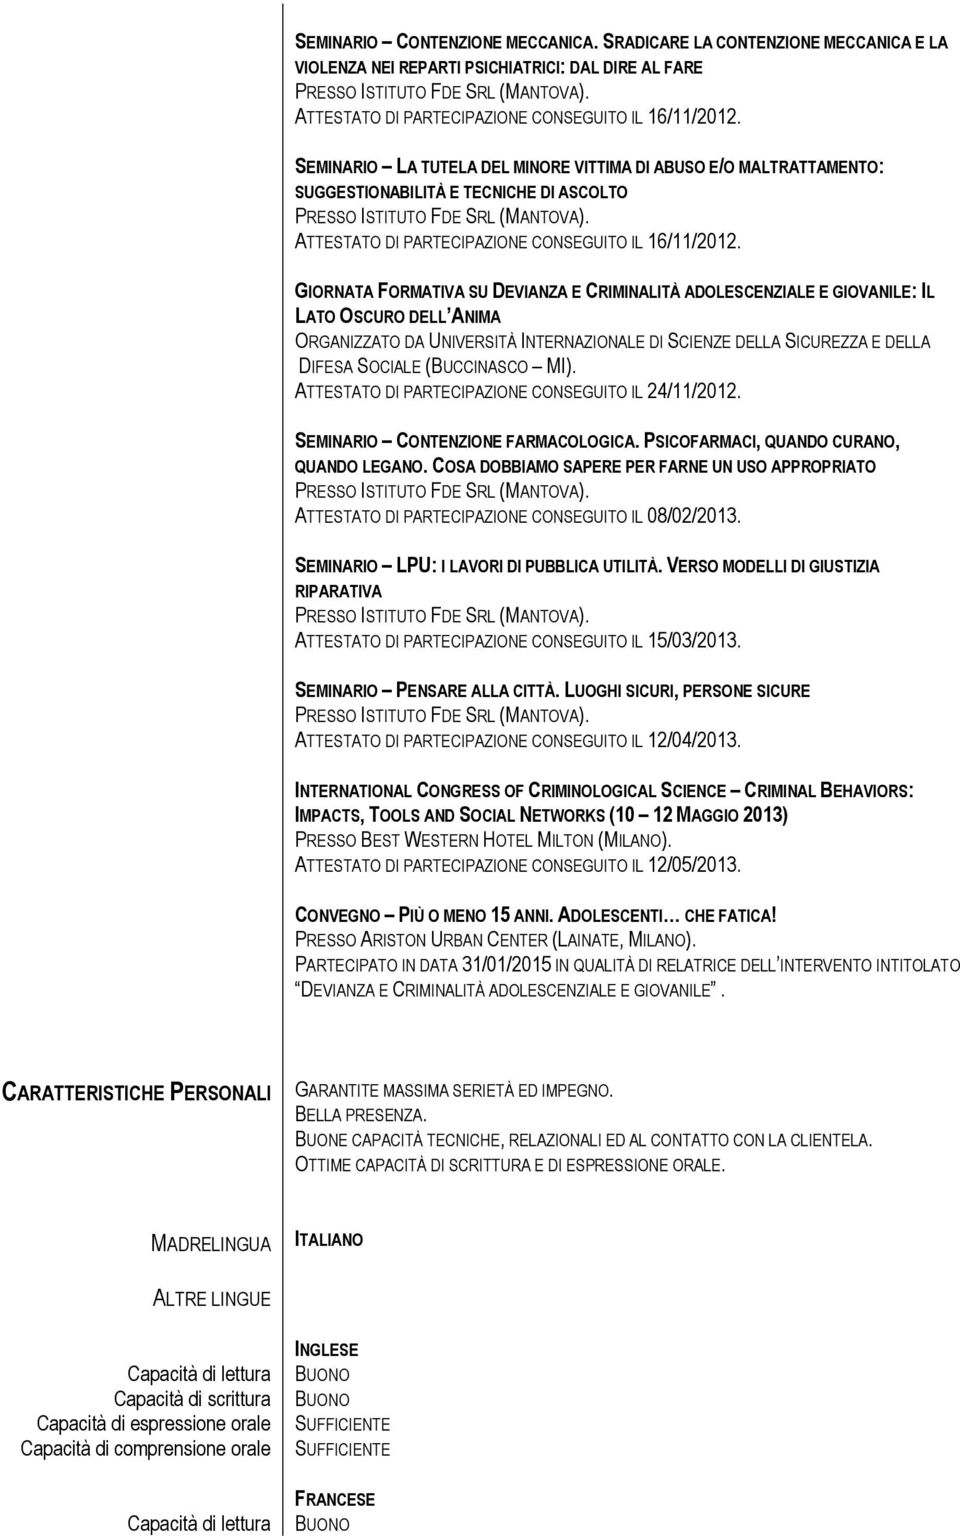 ATTESTATO DI PARTECIPAZIONE CONSEGUITO IL 16/11/2012.